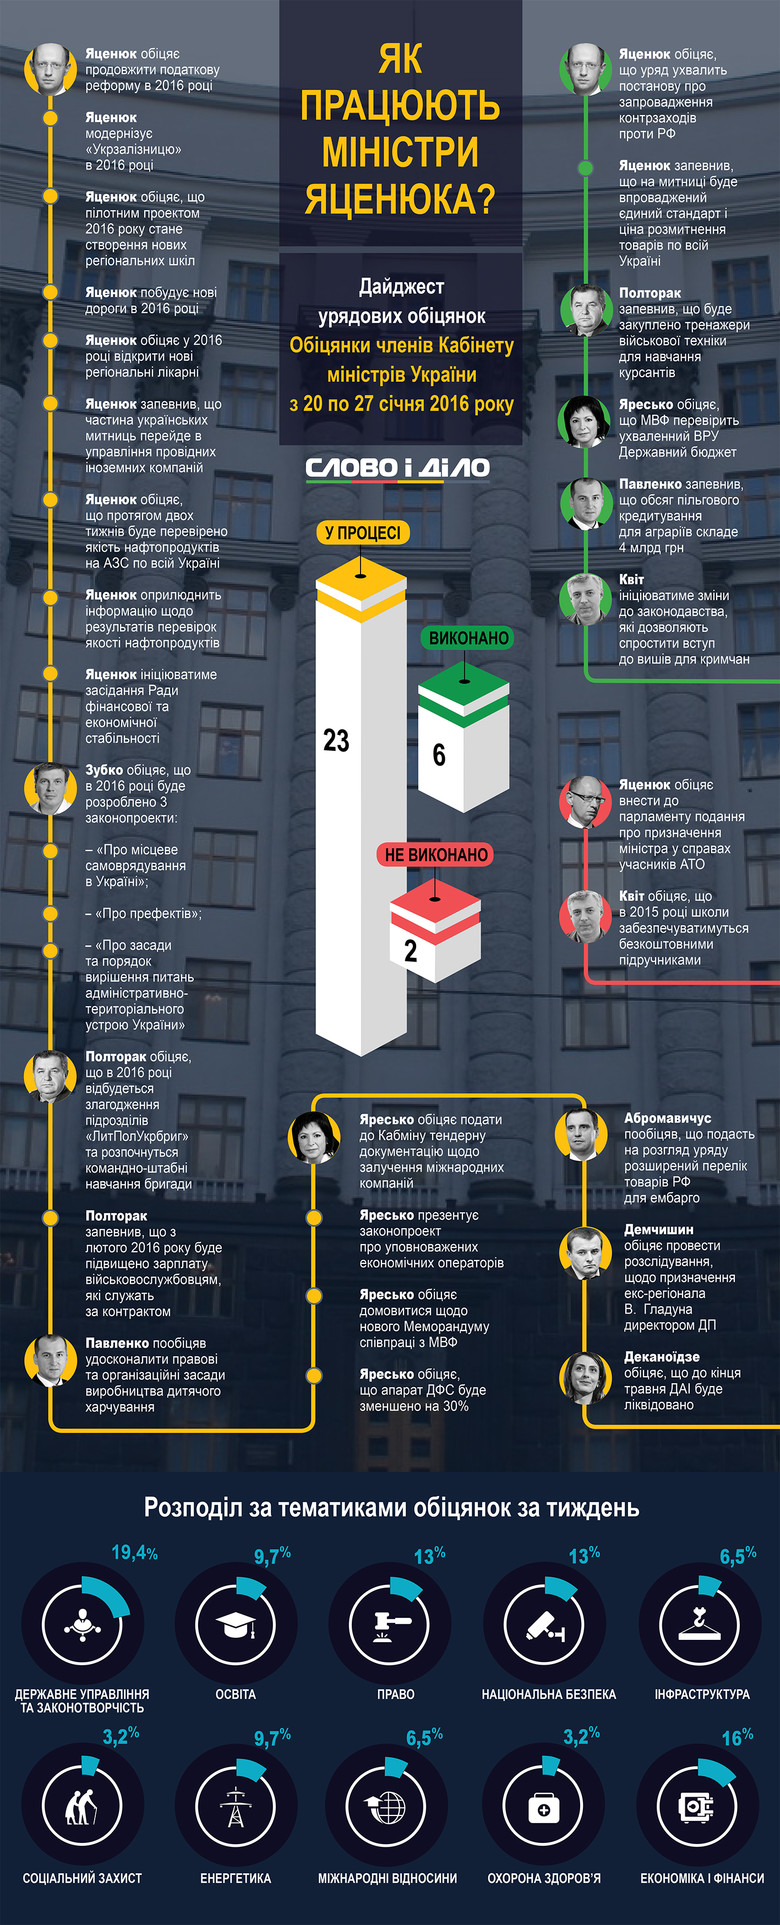 За последнюю неделю украинские министры дали 31 обещание, из которых 6 не смогли выполнить, 2 – выполнили, а 23 – находятся в процессе выполнения.